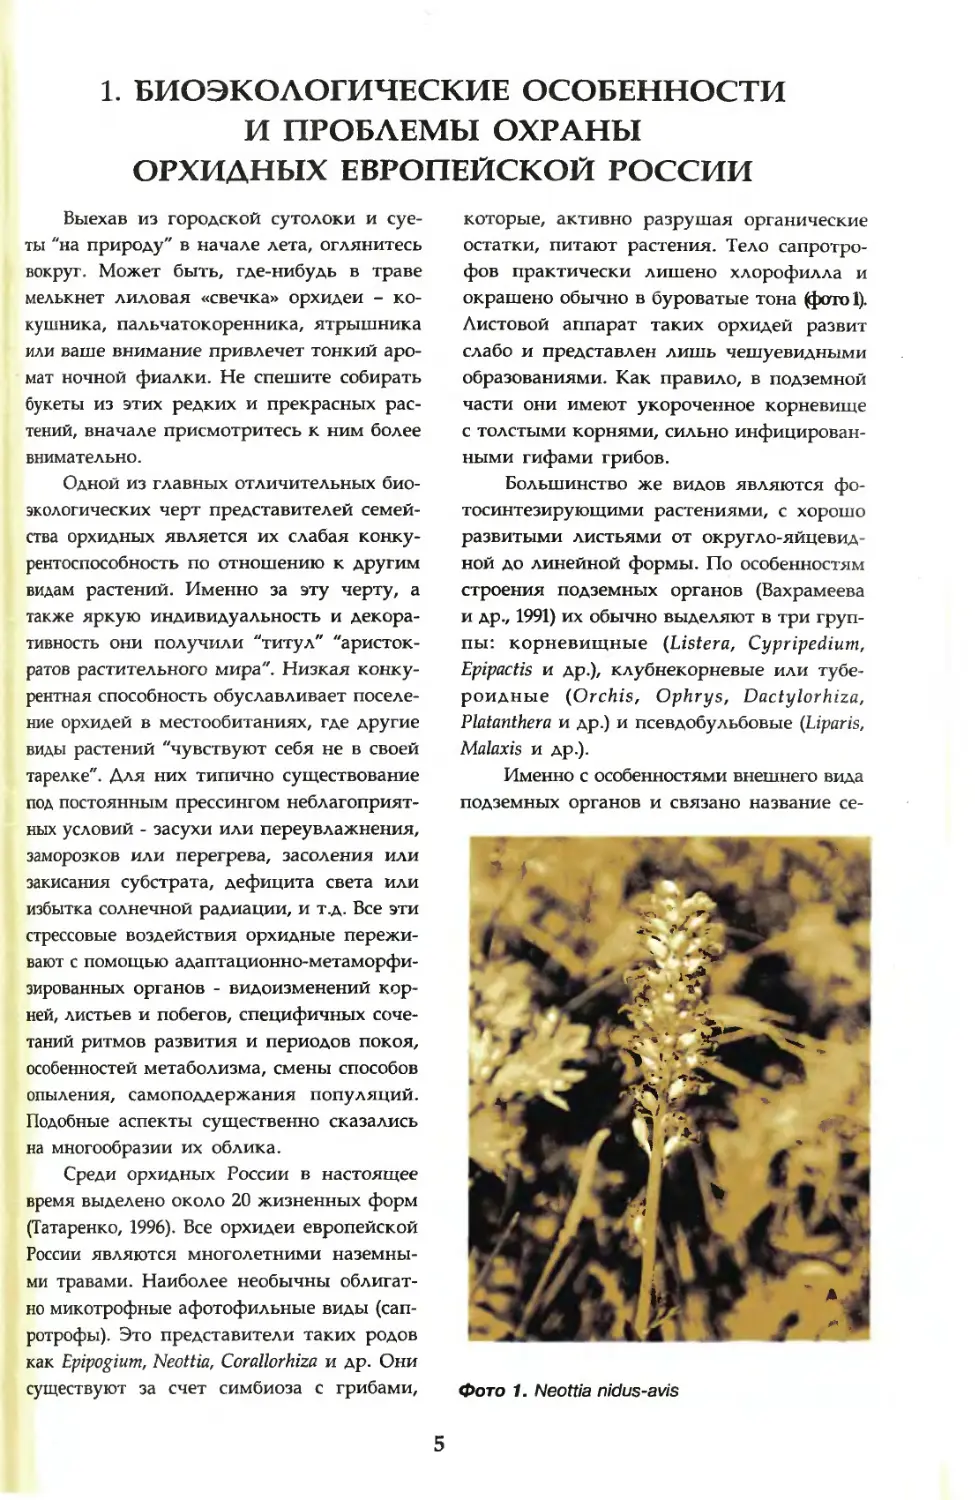 1. Биоэкологические особенности и проблемы охраны орхидных европейской России